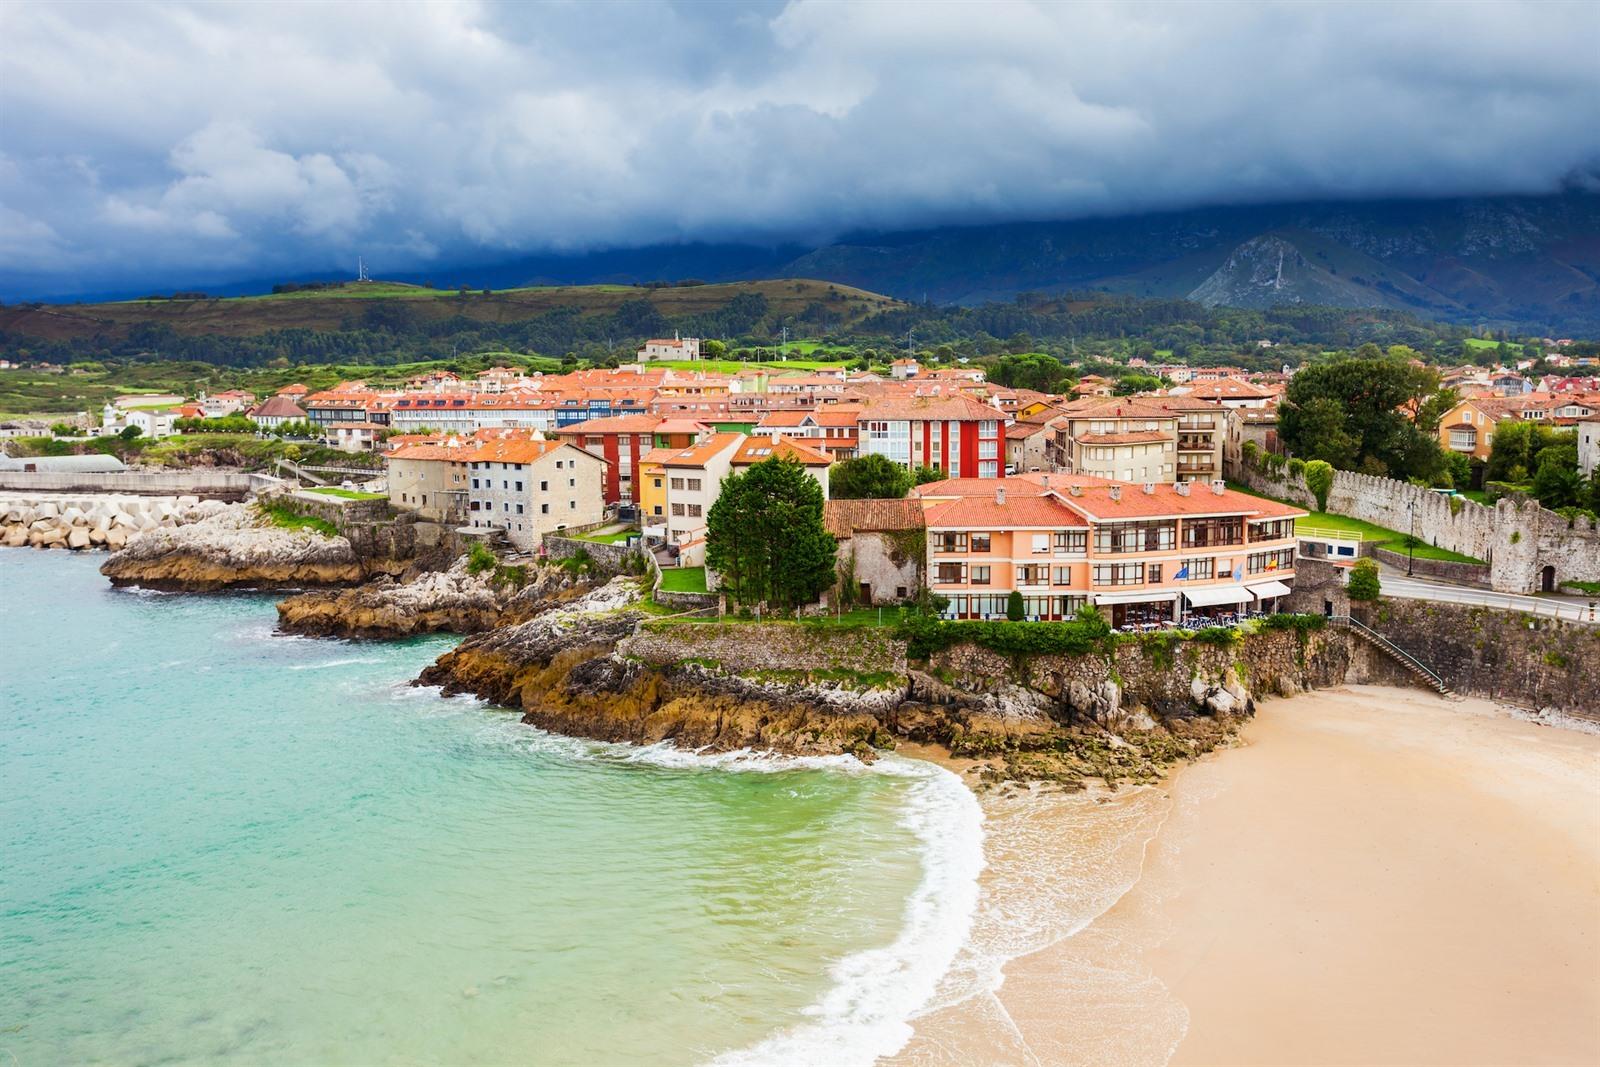 Omtrek Vooraf Zonsverduistering 11 x top bezienswaardigheden langs de Costa Verde: Tips + info